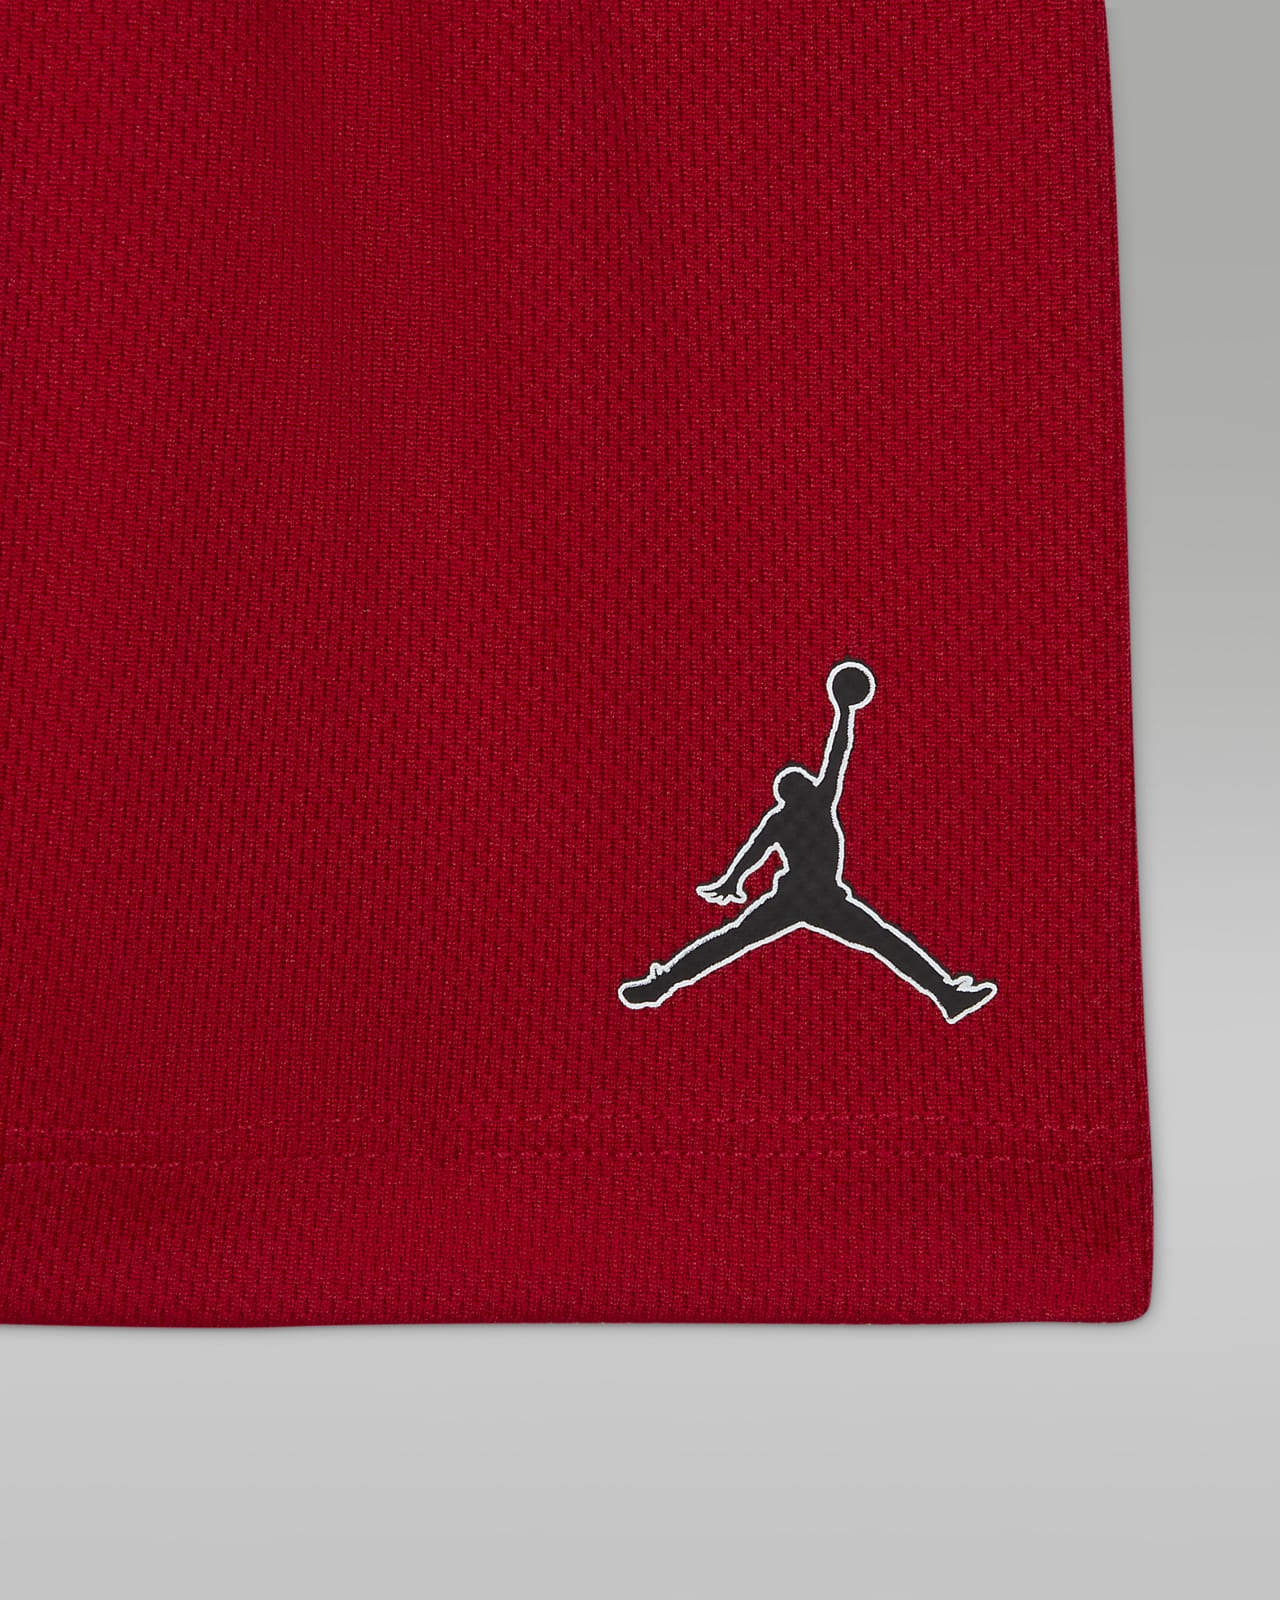 Jordan Jumpman Air Baby (12-24M) T-Shirt and Shorts Set